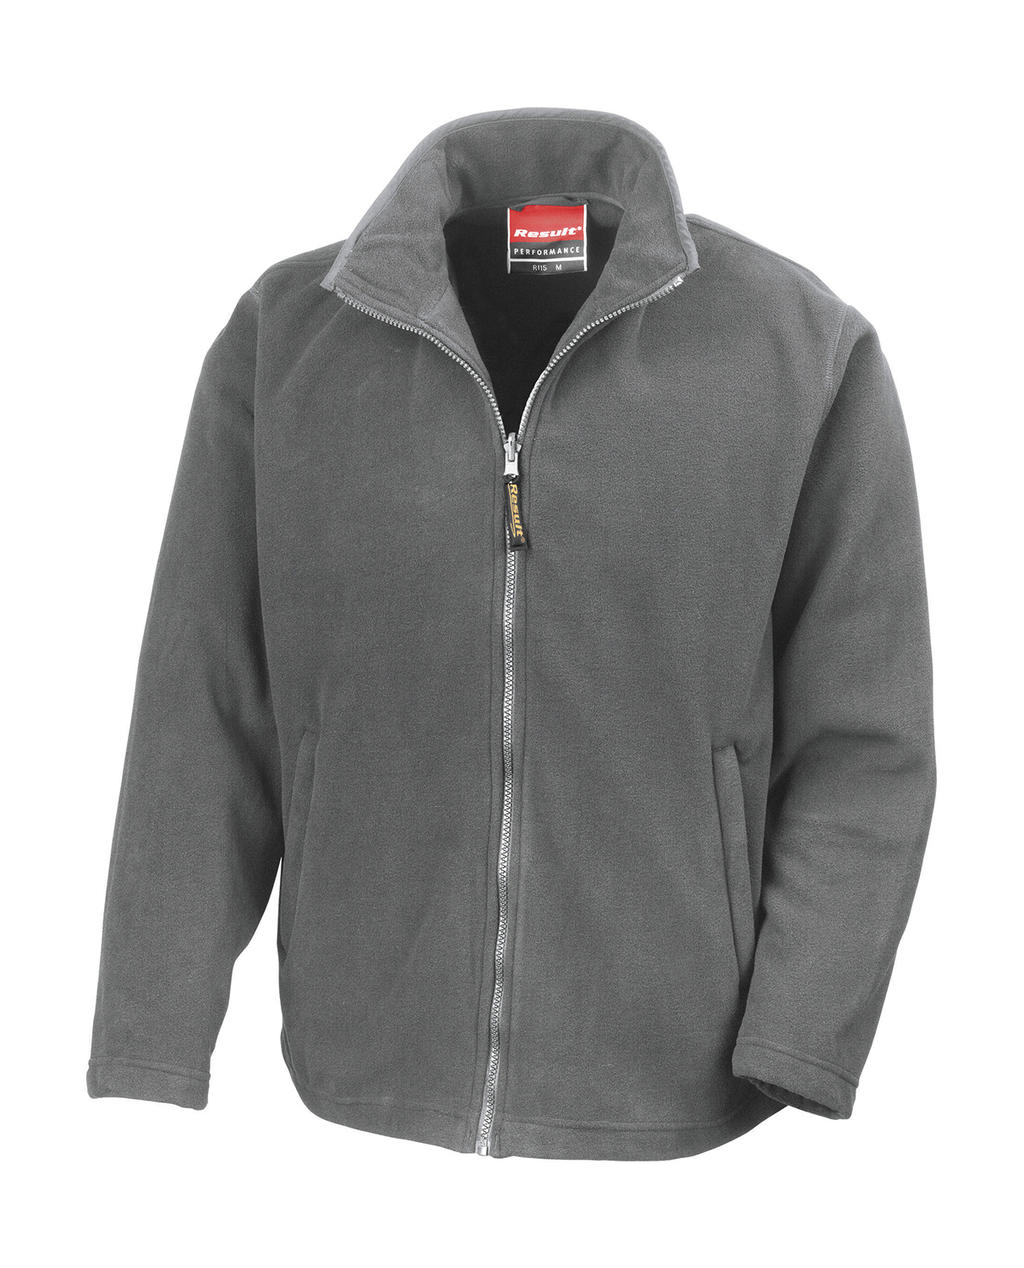  Horizon High Grade Microfleece Jacket in Farbe Dove Grey